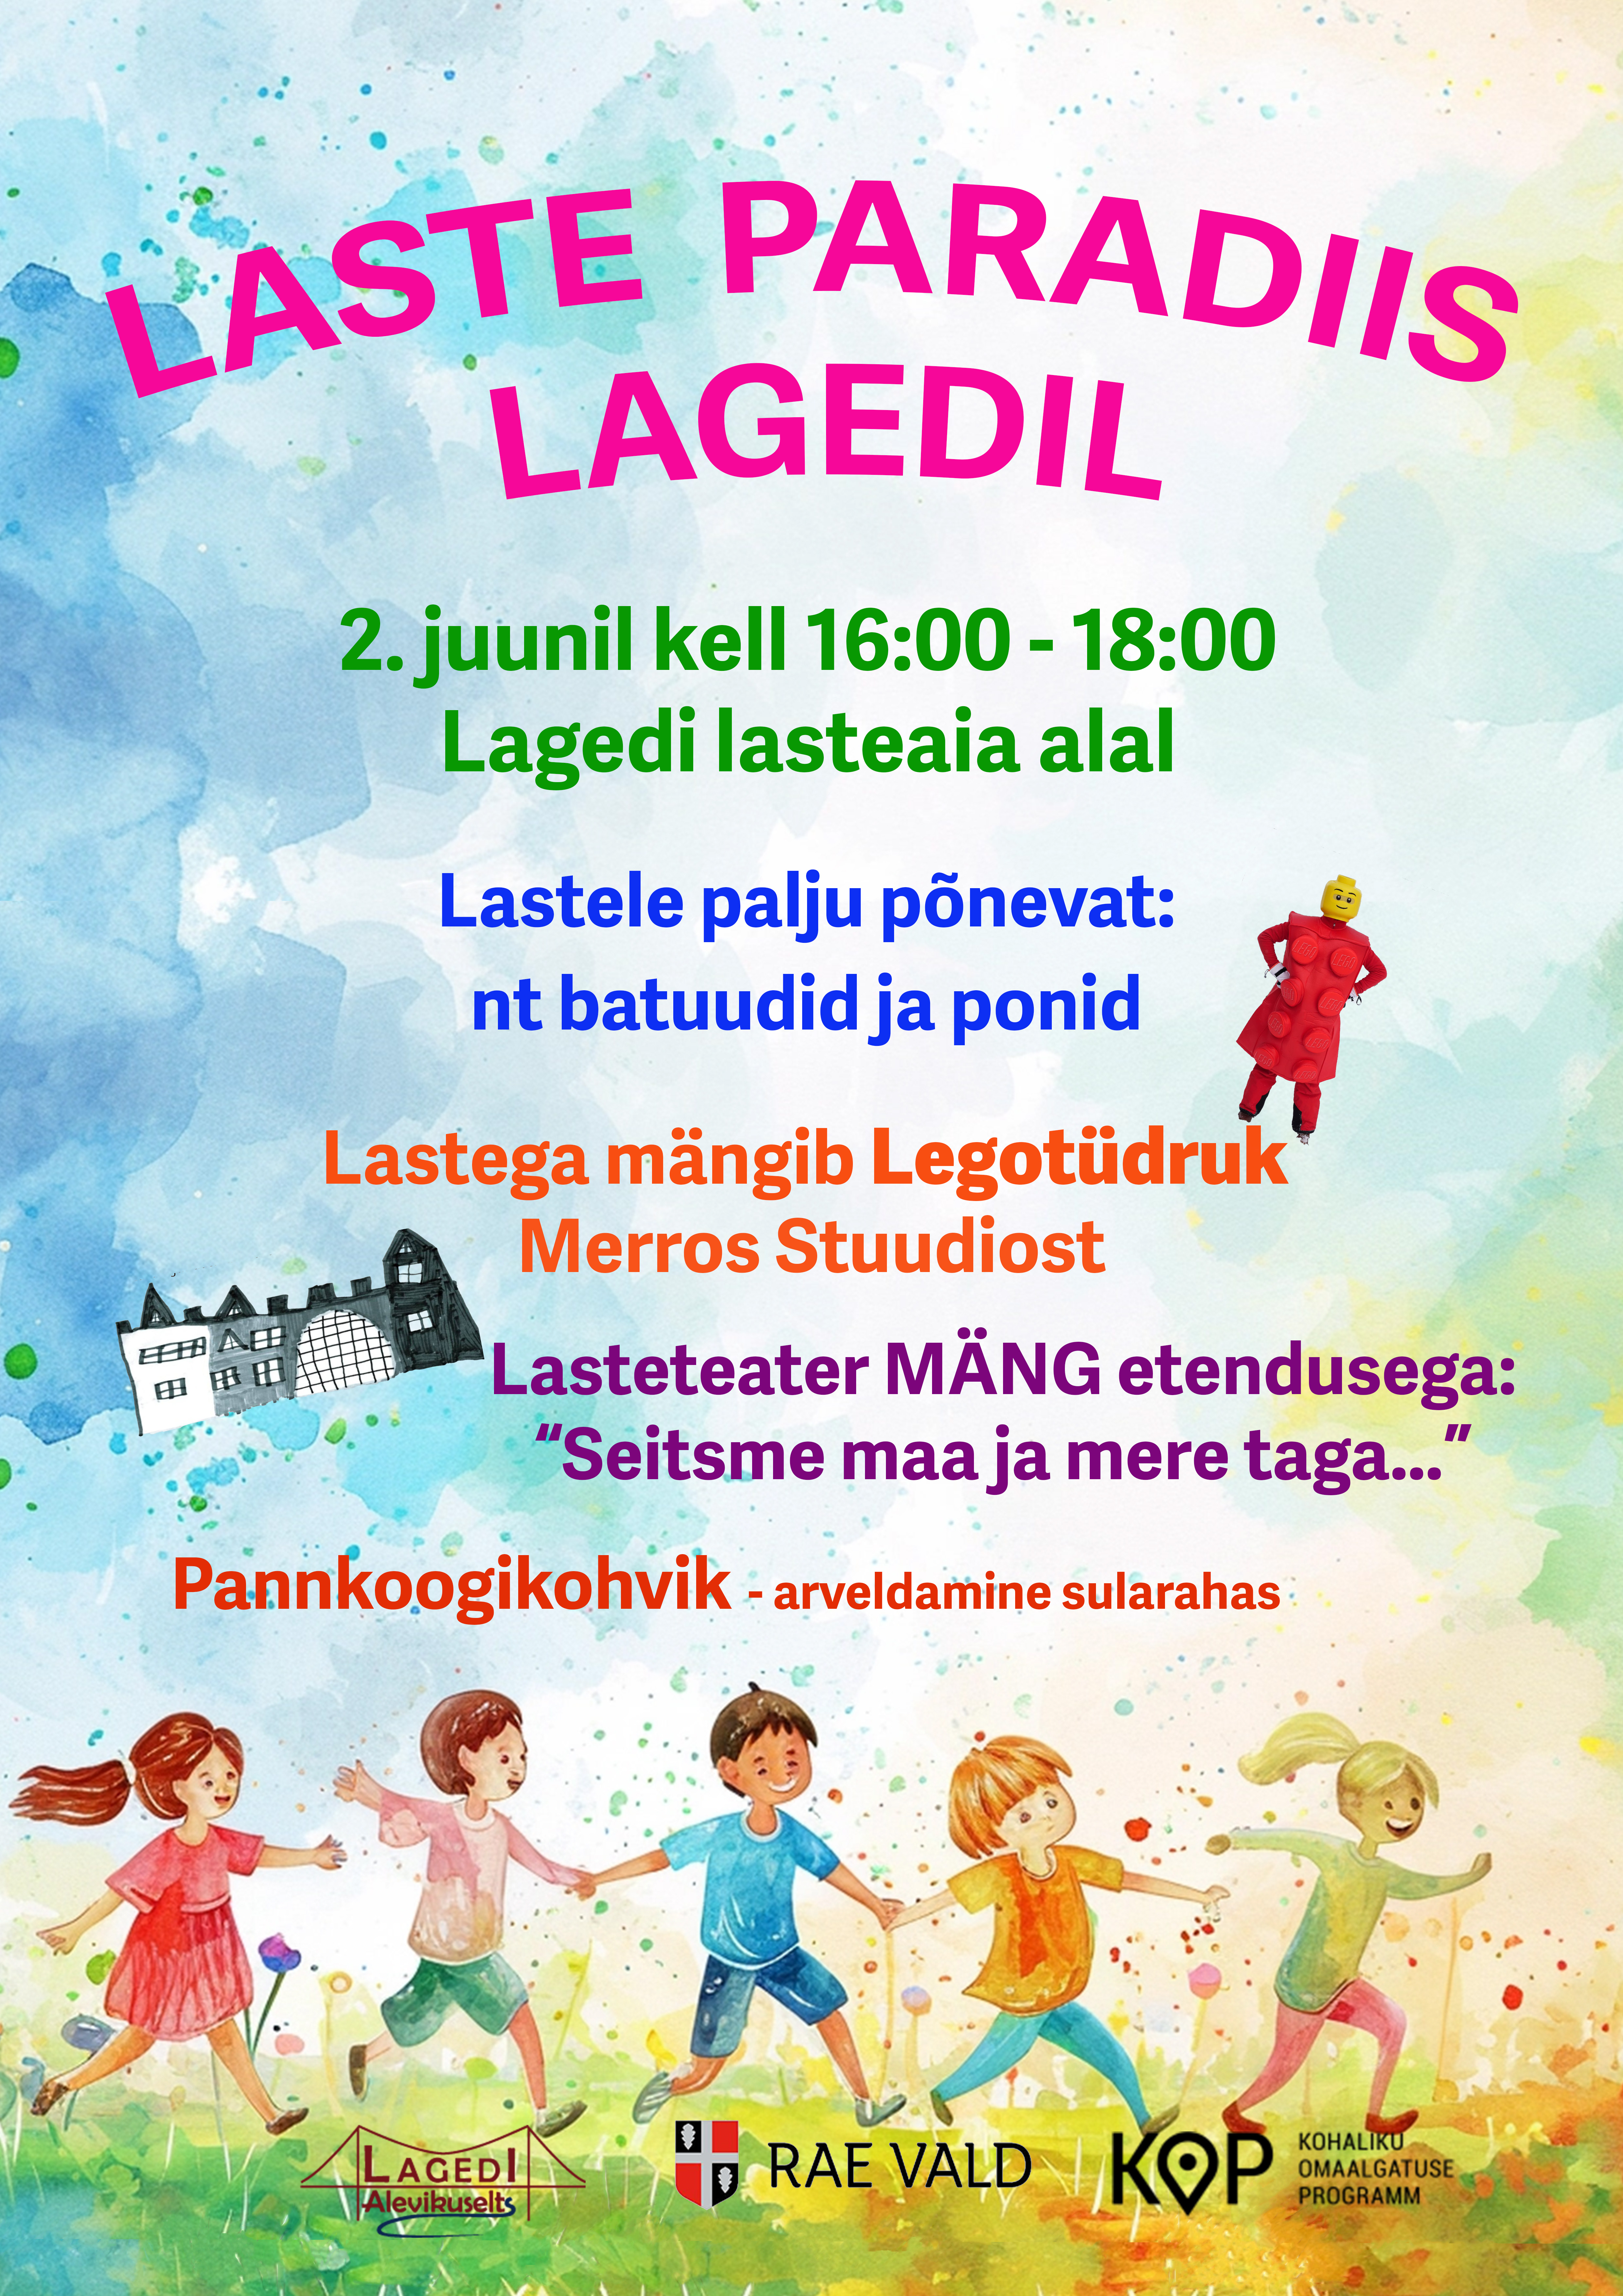 2. juunil toimub vahva lastepäev Lagedil, mis kannab pidulikku nime: “Laste Paradiis Lagedil“. Tegevus toimub Lagedi Lasteaia alal, kus on kindel ja turvaline. 